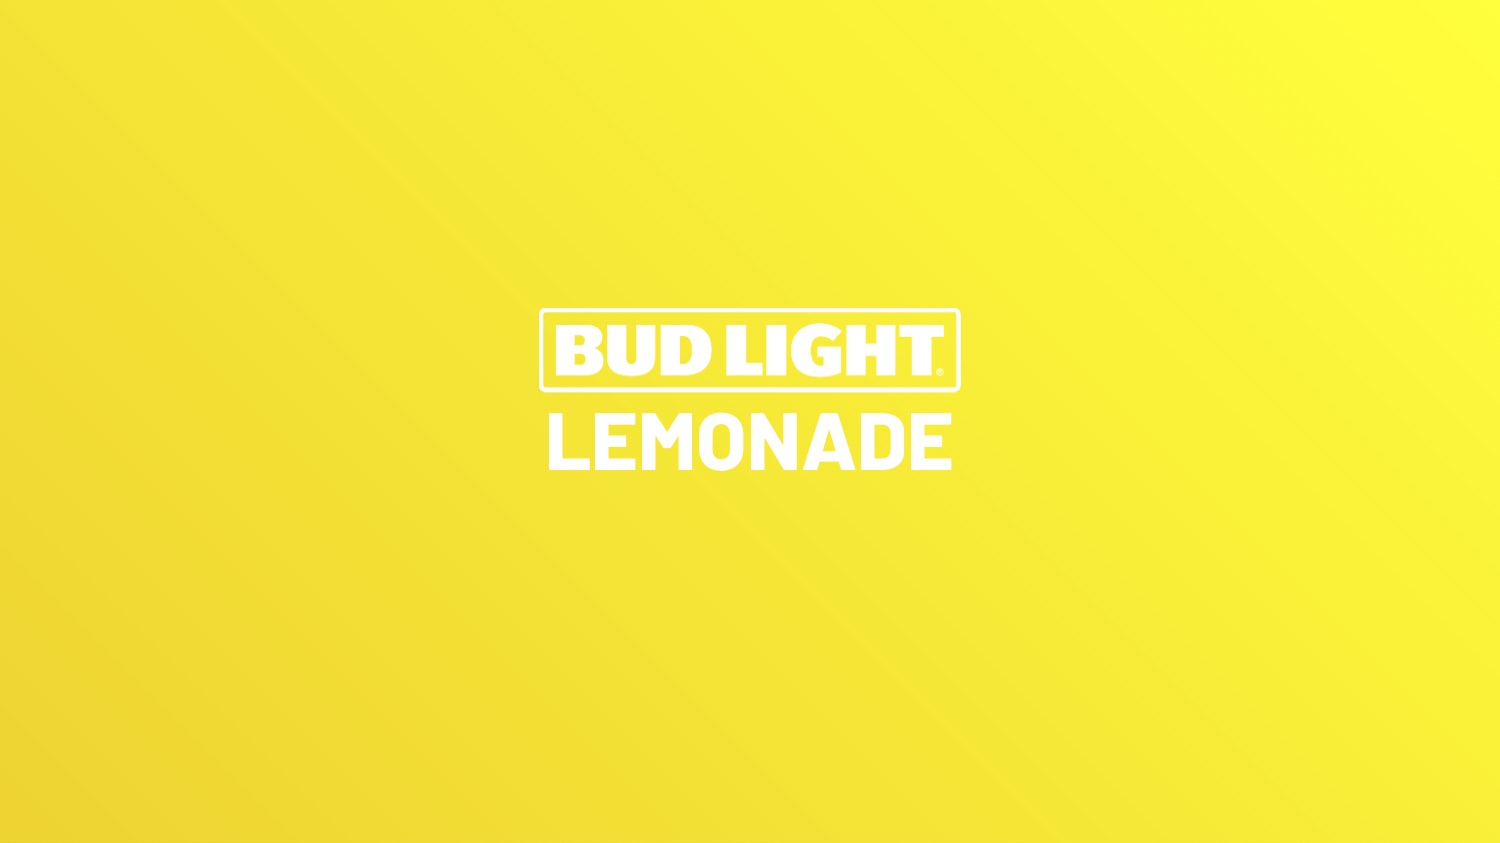 Bud Light Lemonade